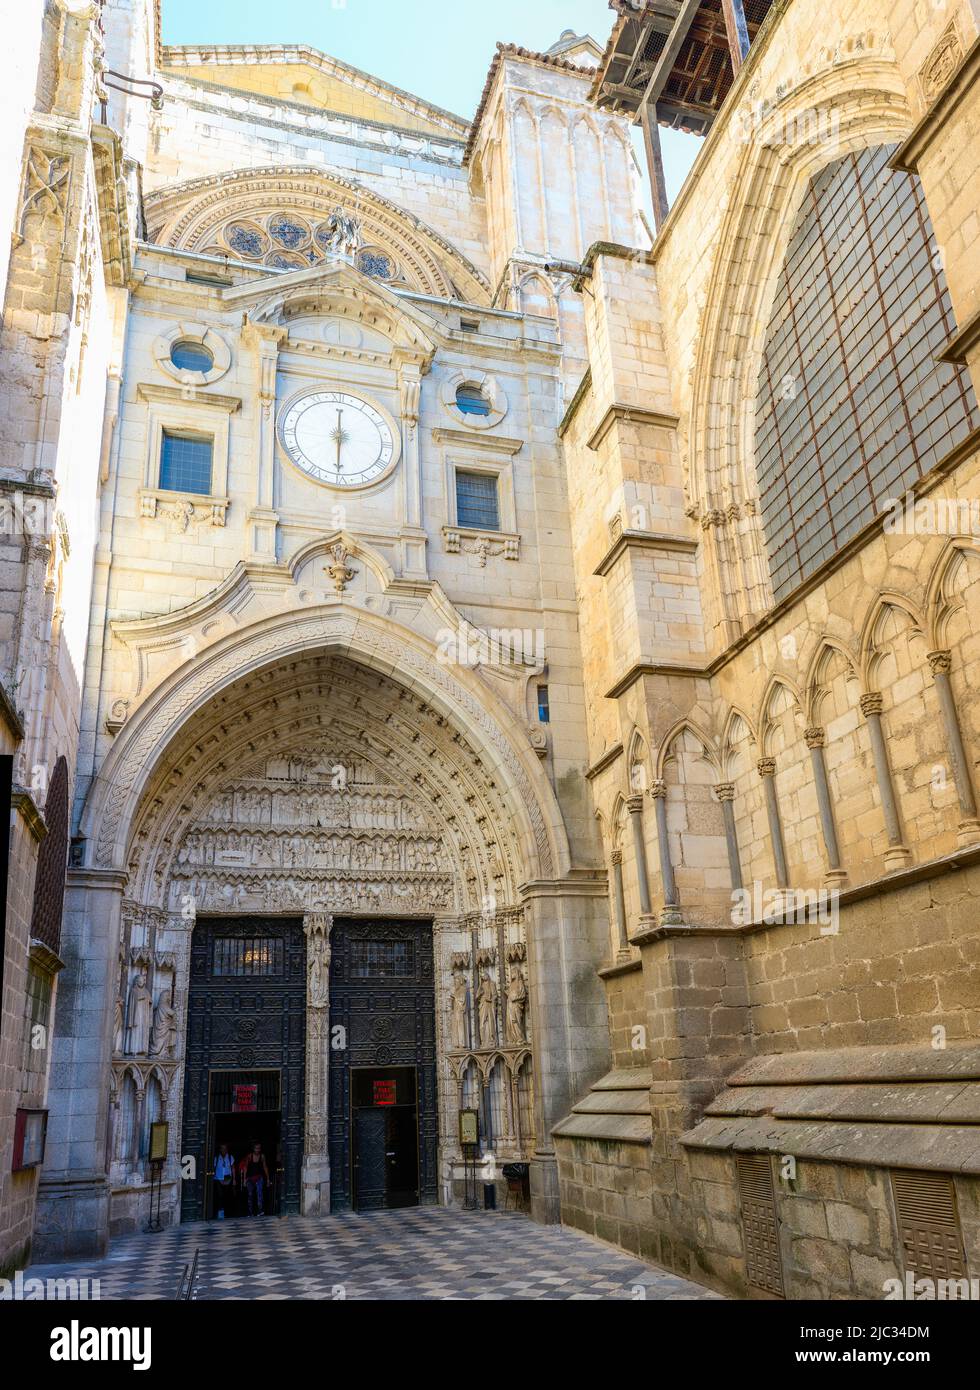 Puerta del Reloj Gate. Toledo Prime Cathedral. Toledo, Castilla La Mancha, Spain. Stock Photo